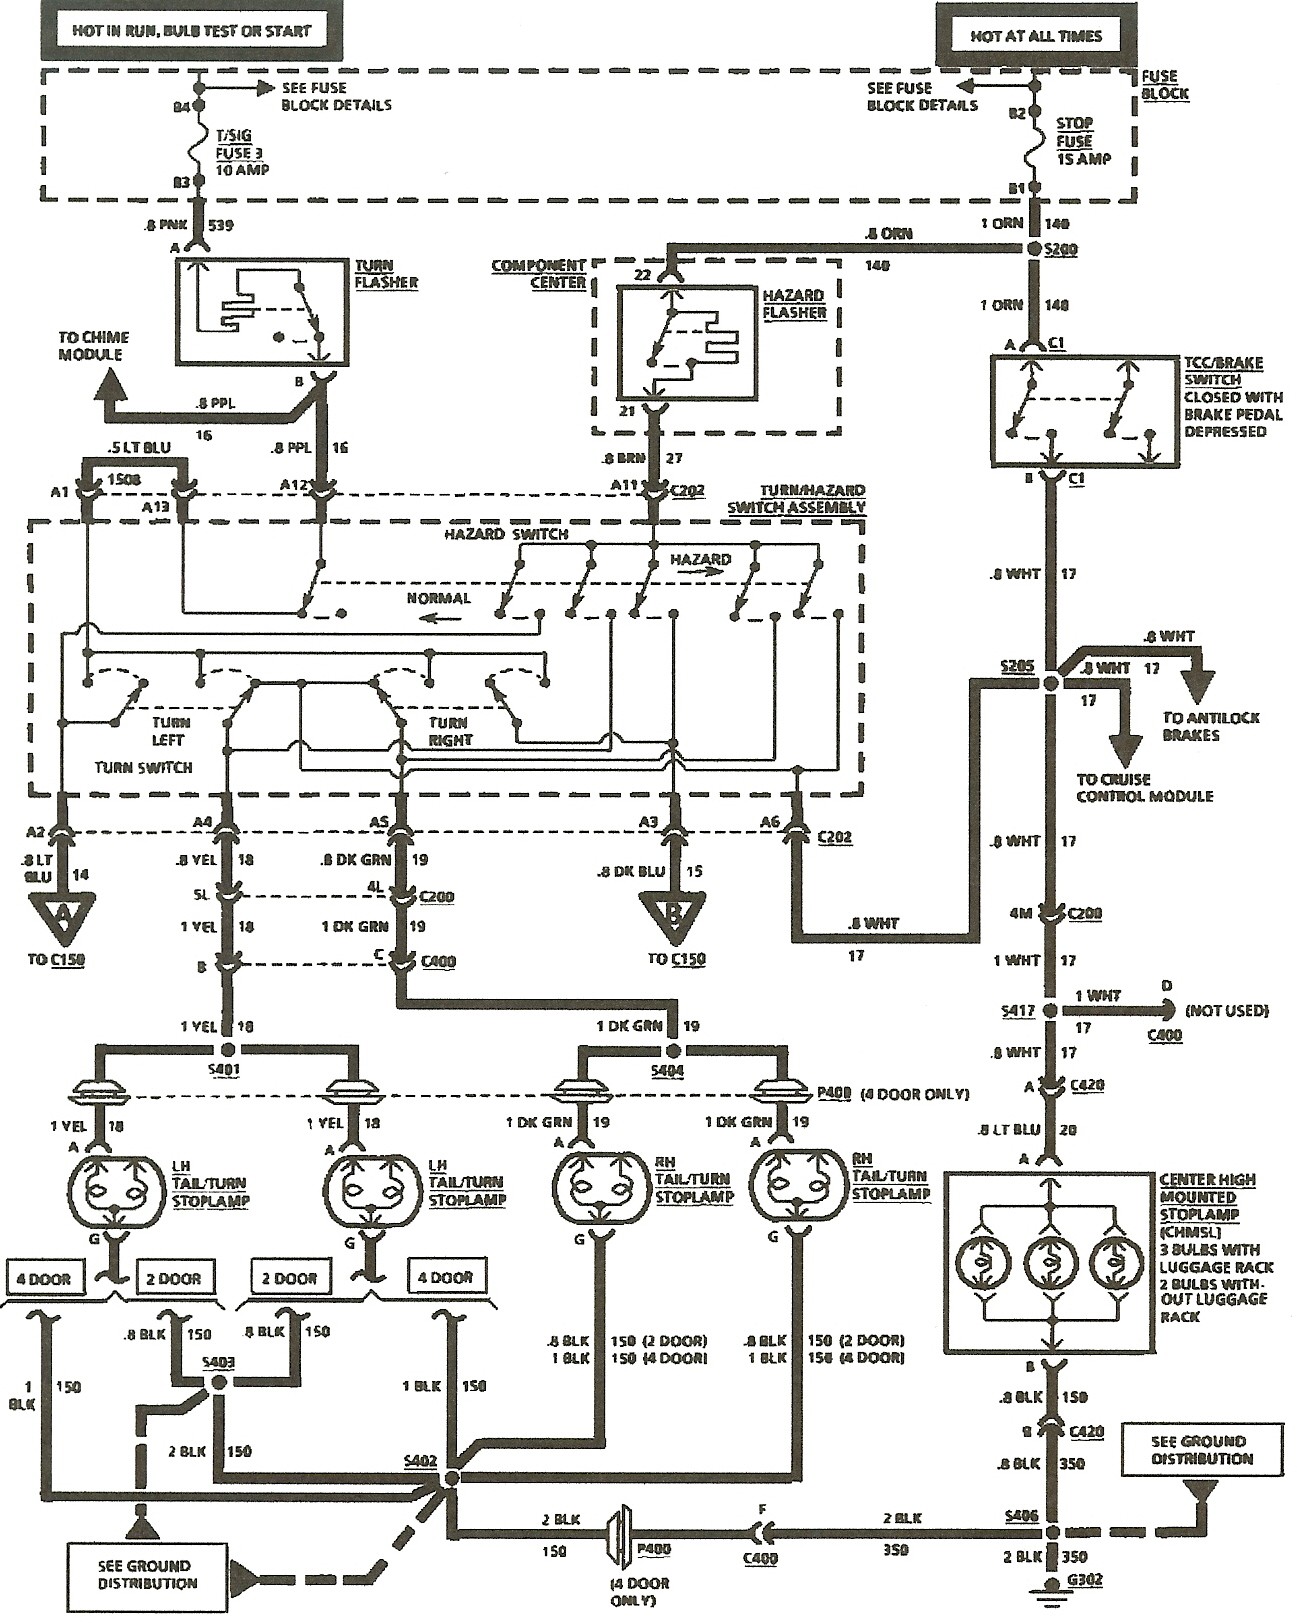 Turn Signal Flasher Wiring Diagram] Wiring Diagram Turn Signal Full Version Hd Of Turn Signal Flasher Wiring